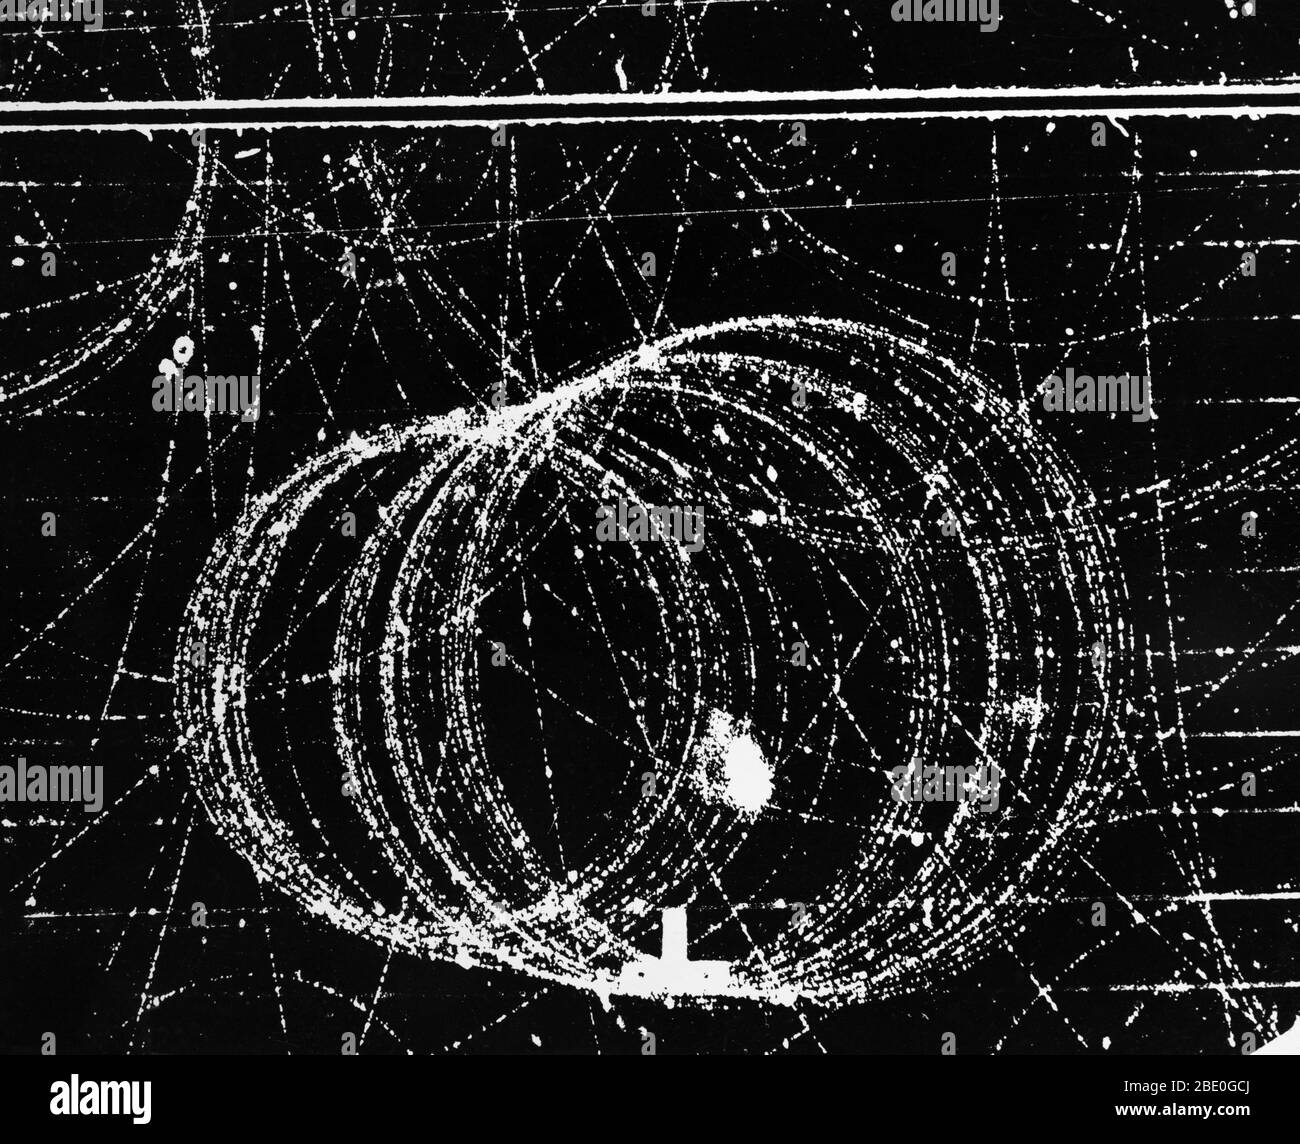 Kreisförmige Spur von 42 Meu Positron in 12,000 Gauß Magnetfeld. Die Weglänge der Positronenbahn auf diesem Foto beträgt fast 8 Meter. Elektronen- und Positronenspiralbahnen in einer Wolkenkammer im Lawrence Berkeley Laboratory, Kalifornien. Elektron und Positron begannen ihr Leben am unteren Rand des Rahmens; sie wurden durch einen von rechts eintretenden Gammastrahl erzeugt. Das Positron, ein Elektron mit positiver Ladung, spiraliert (größere Schleifen) in die linke untere Ecke, während sich die kleineren Schleifen des Elektrons nach oben bewegen. Die anderen Spuren, die den Rahmen überqueren, sind ebenfalls darauf zurückzuführen Stockfoto